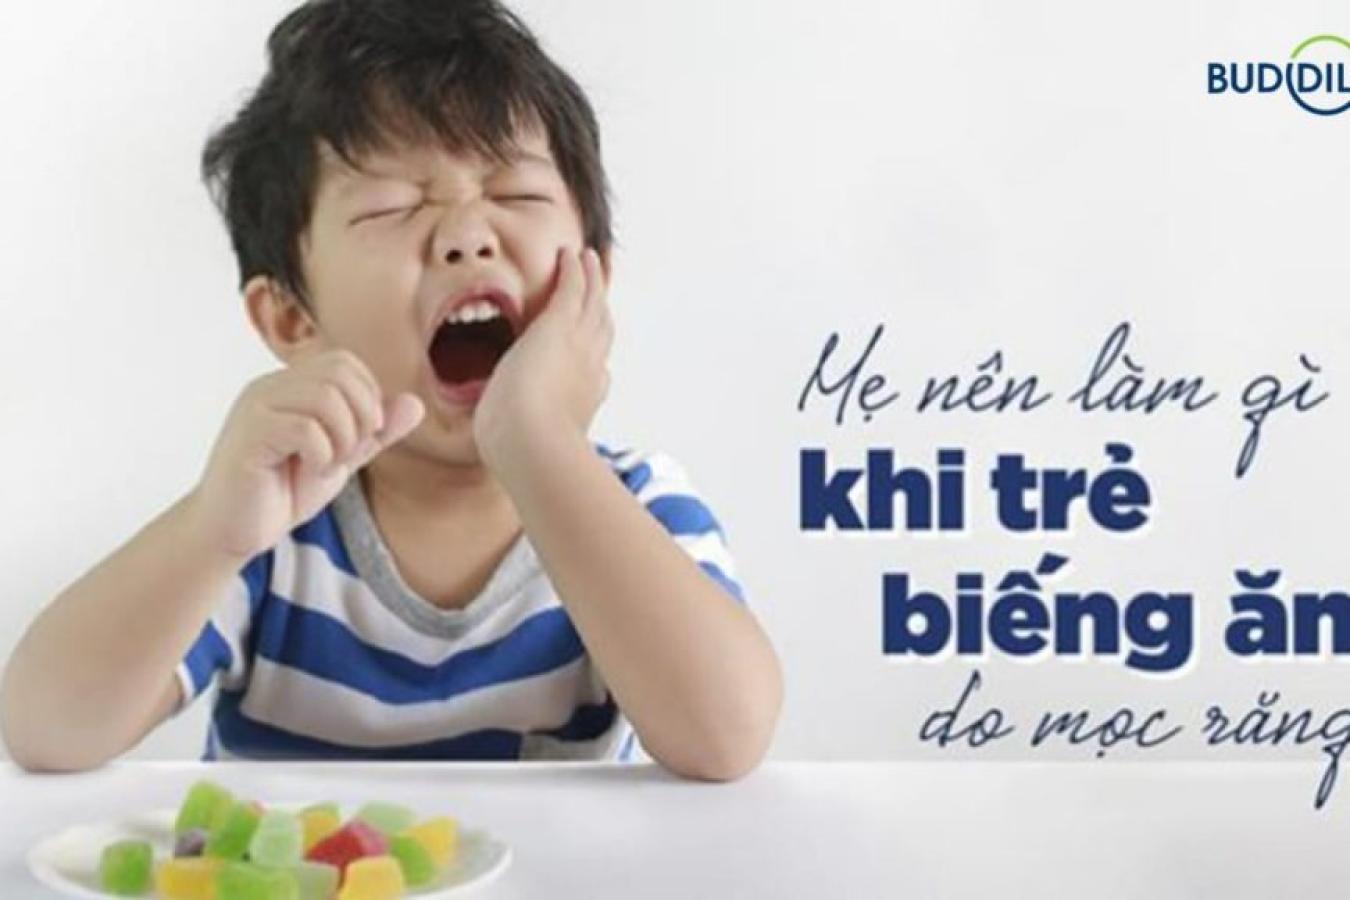 Cách chăm sóc trẻ mọc răng biếng ăn và những thực phẩm tốt cho bé